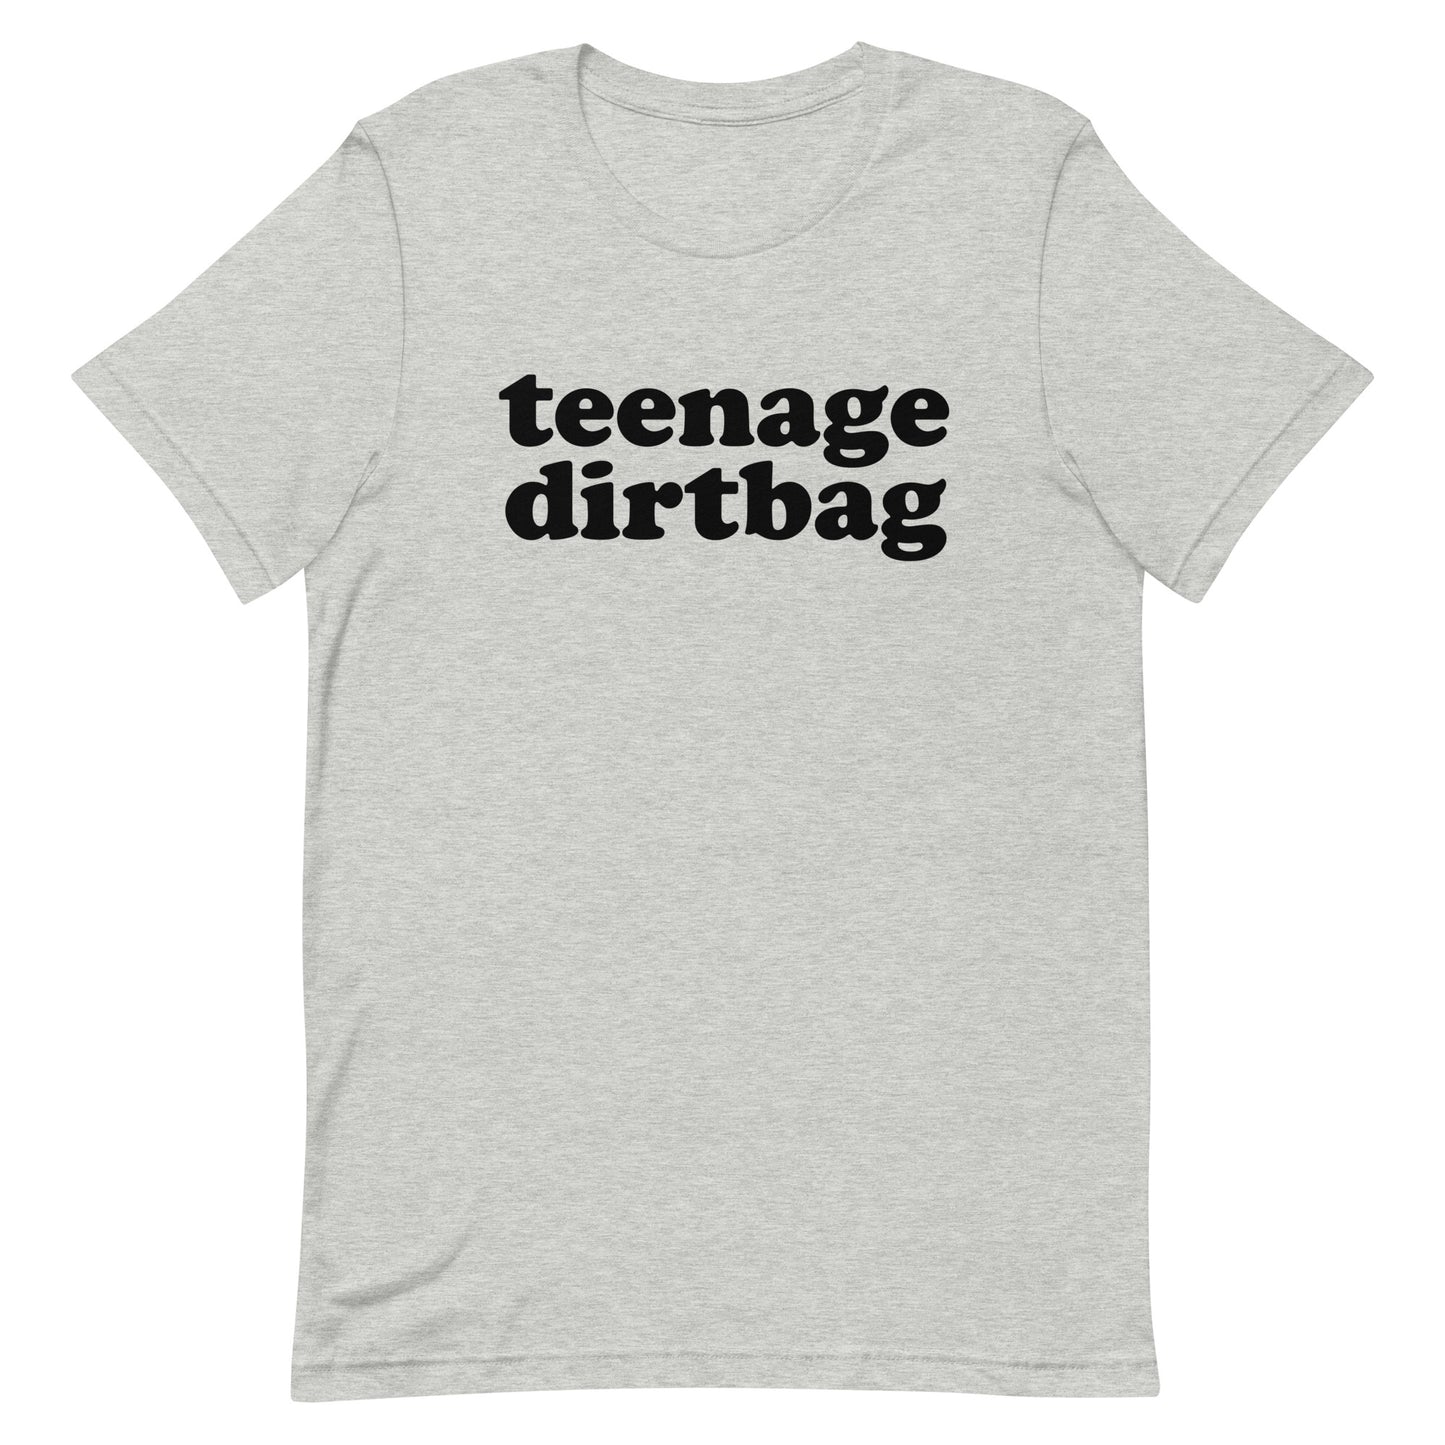 Teenage Dirtbag t-shirt